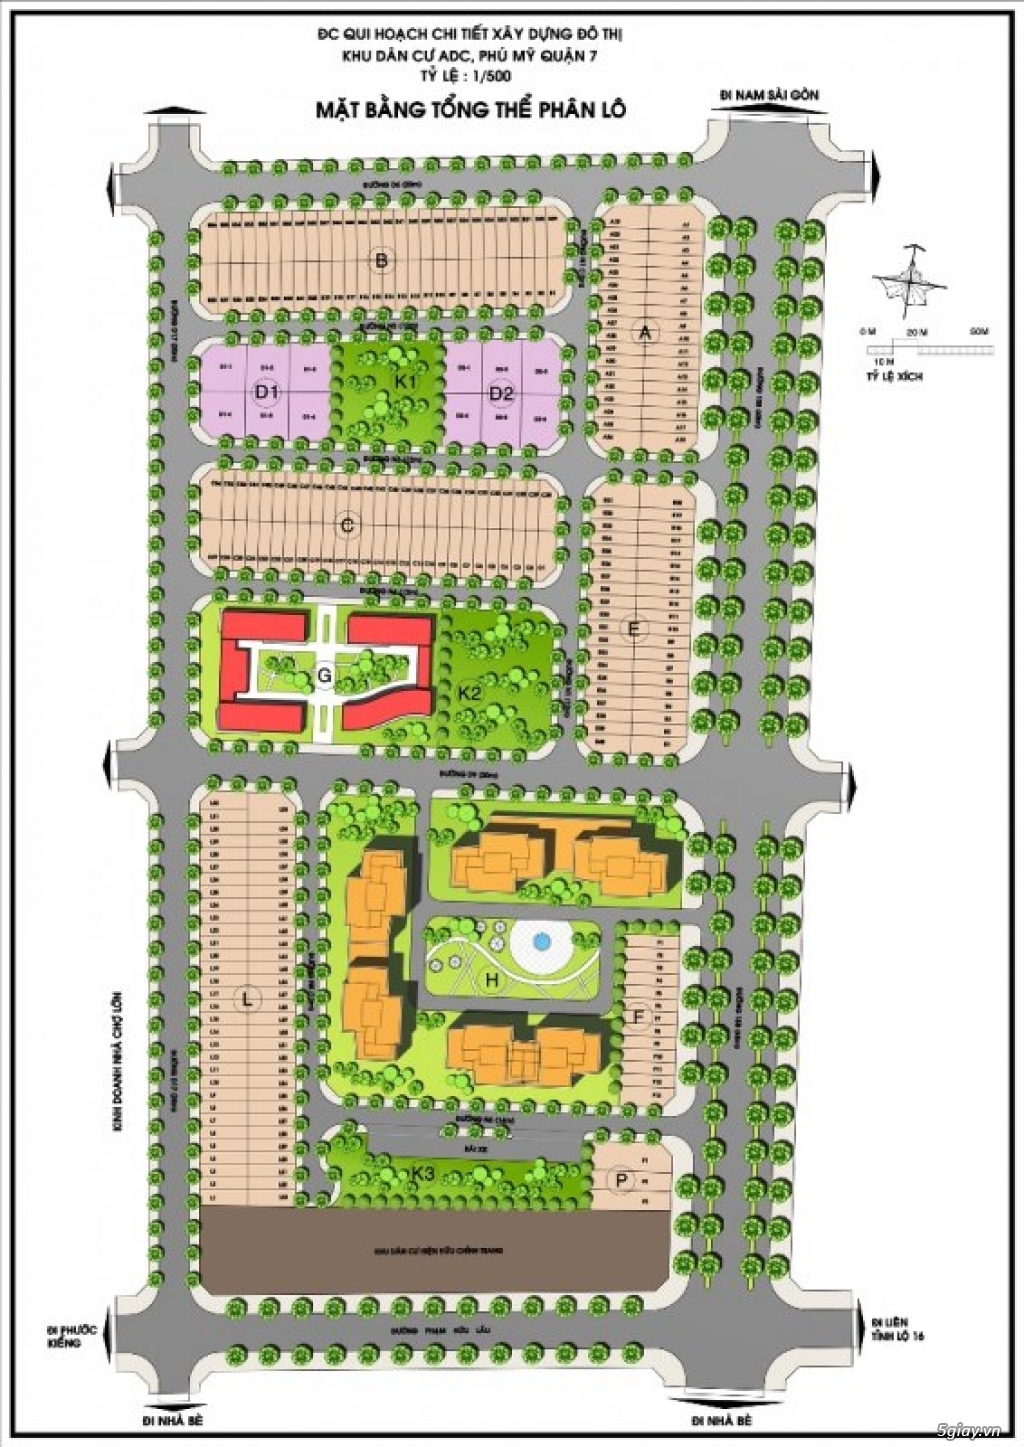 Rổ hàng tốt đầu tư đất nền khu ADC Phú Mỹ - Quận 7 - Update Liên tục - 1